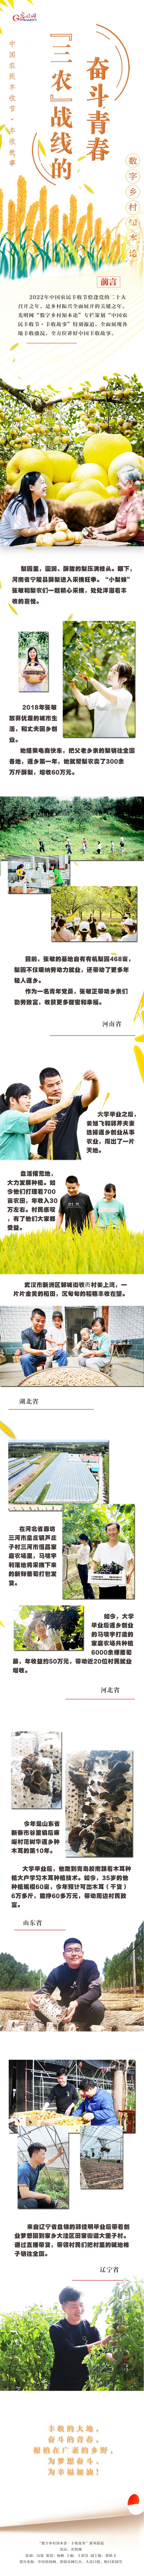 【中国农民丰收节】“三农”战线的奋斗青春